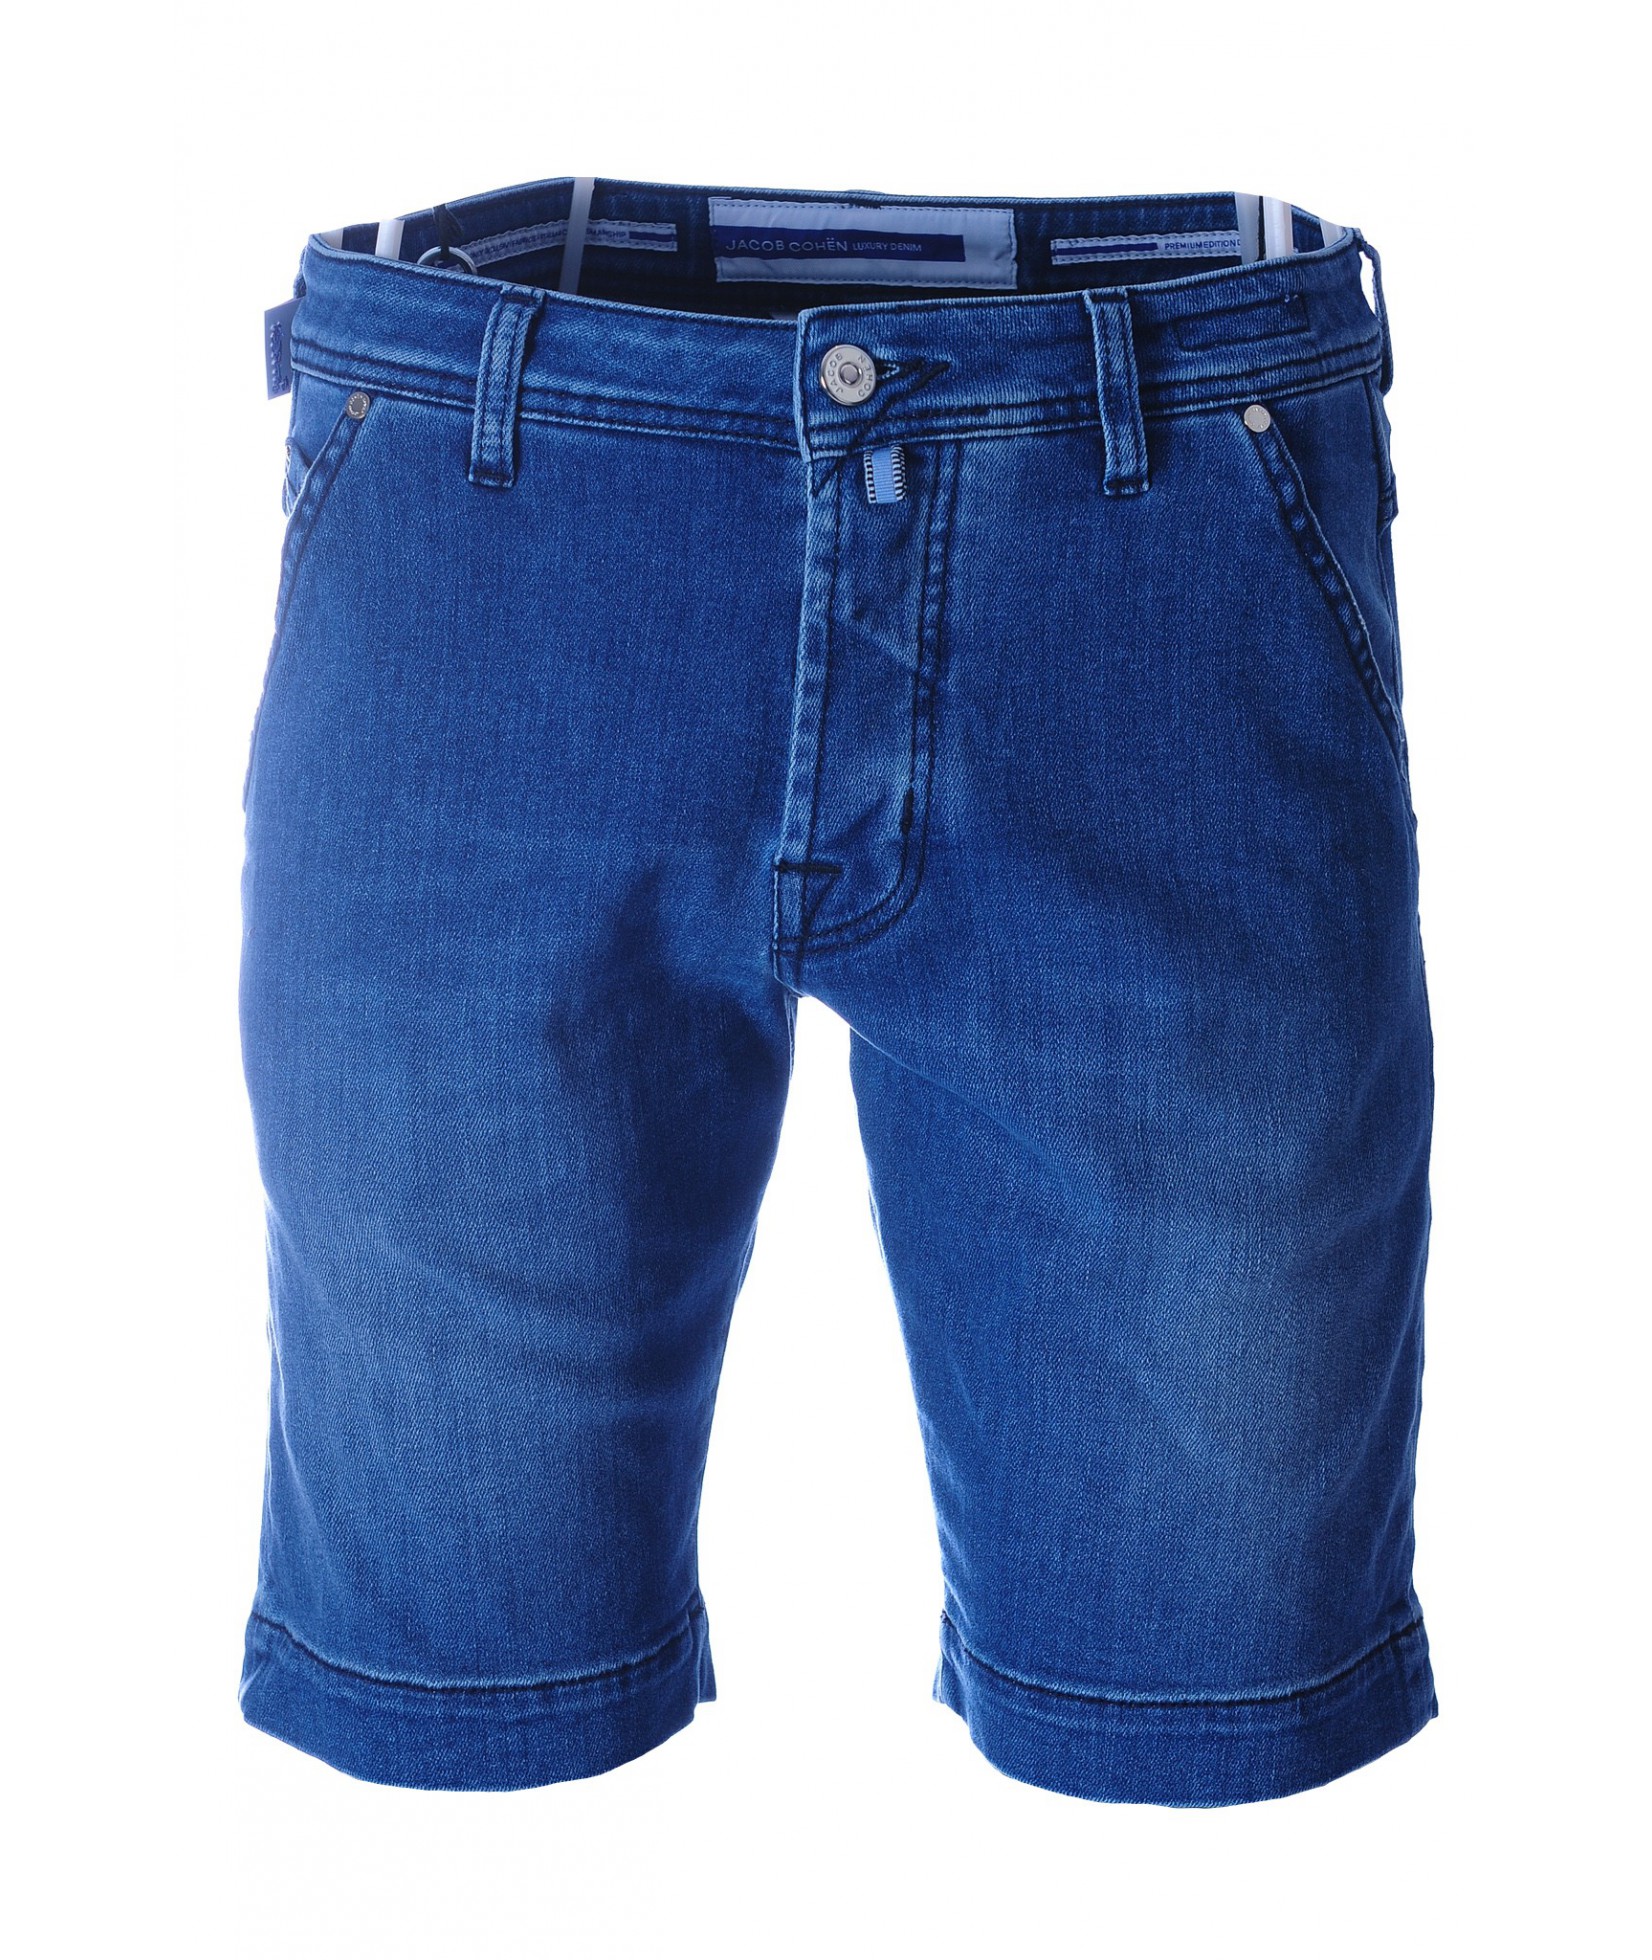 Jacob Cohen Short Jeans Dark blue (35629)